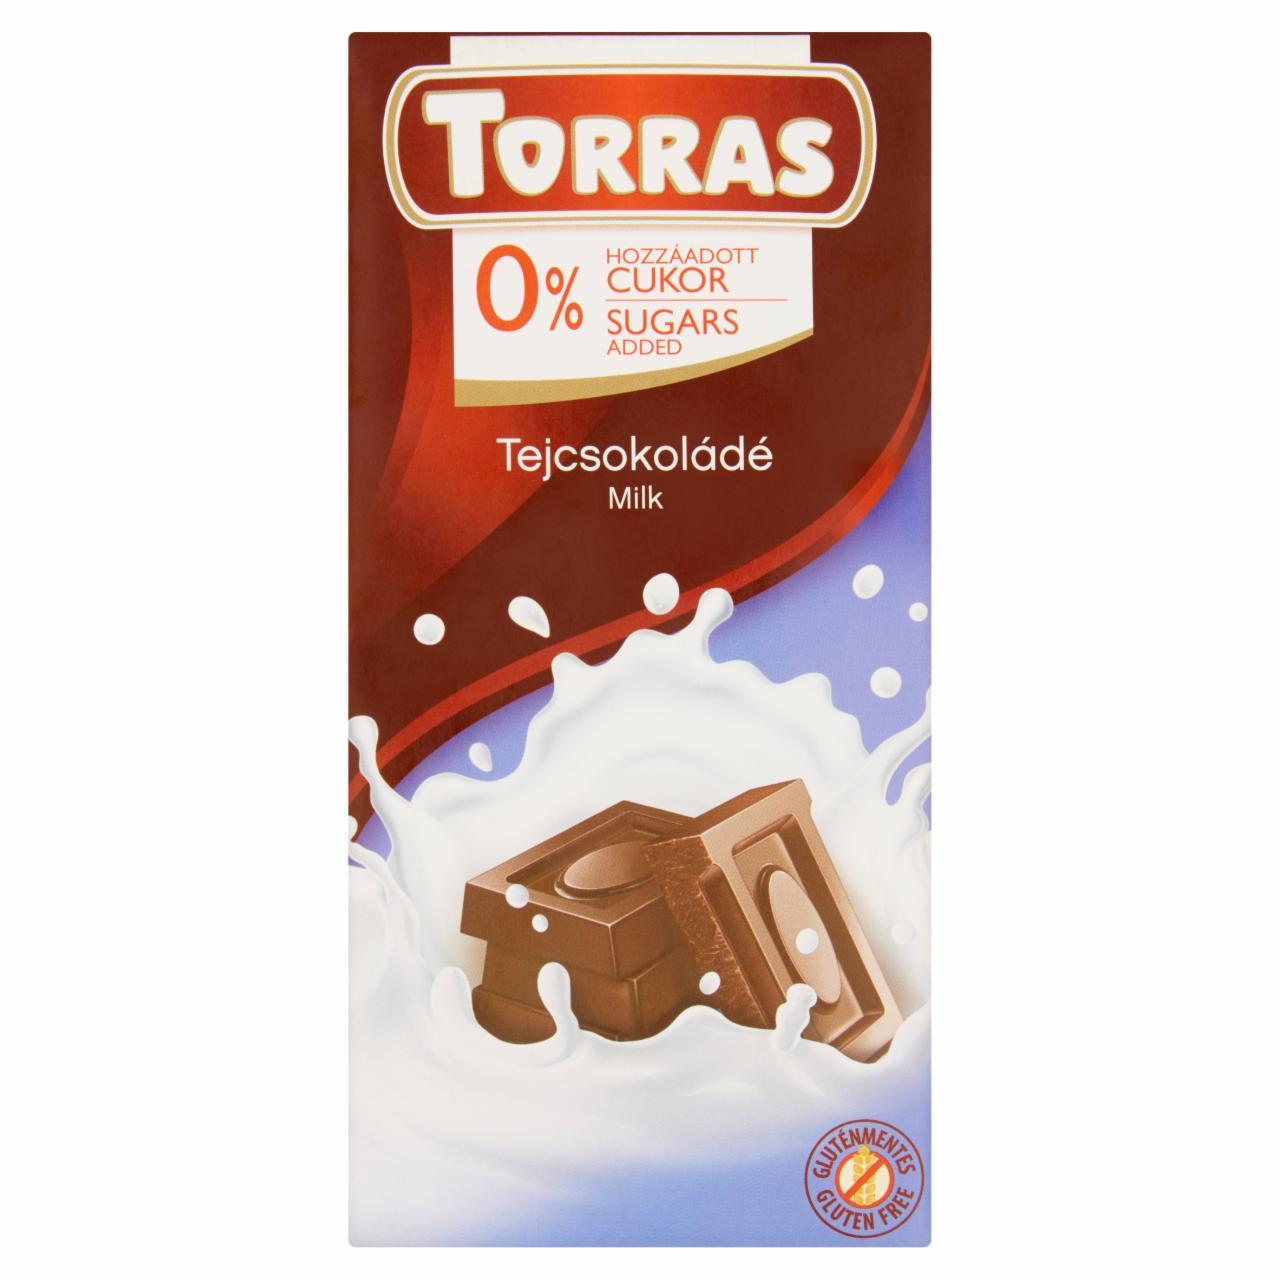 Képek - Torras tejcsokoládé hozzáadott cukor nélkül, édesítőszerrel 75 g